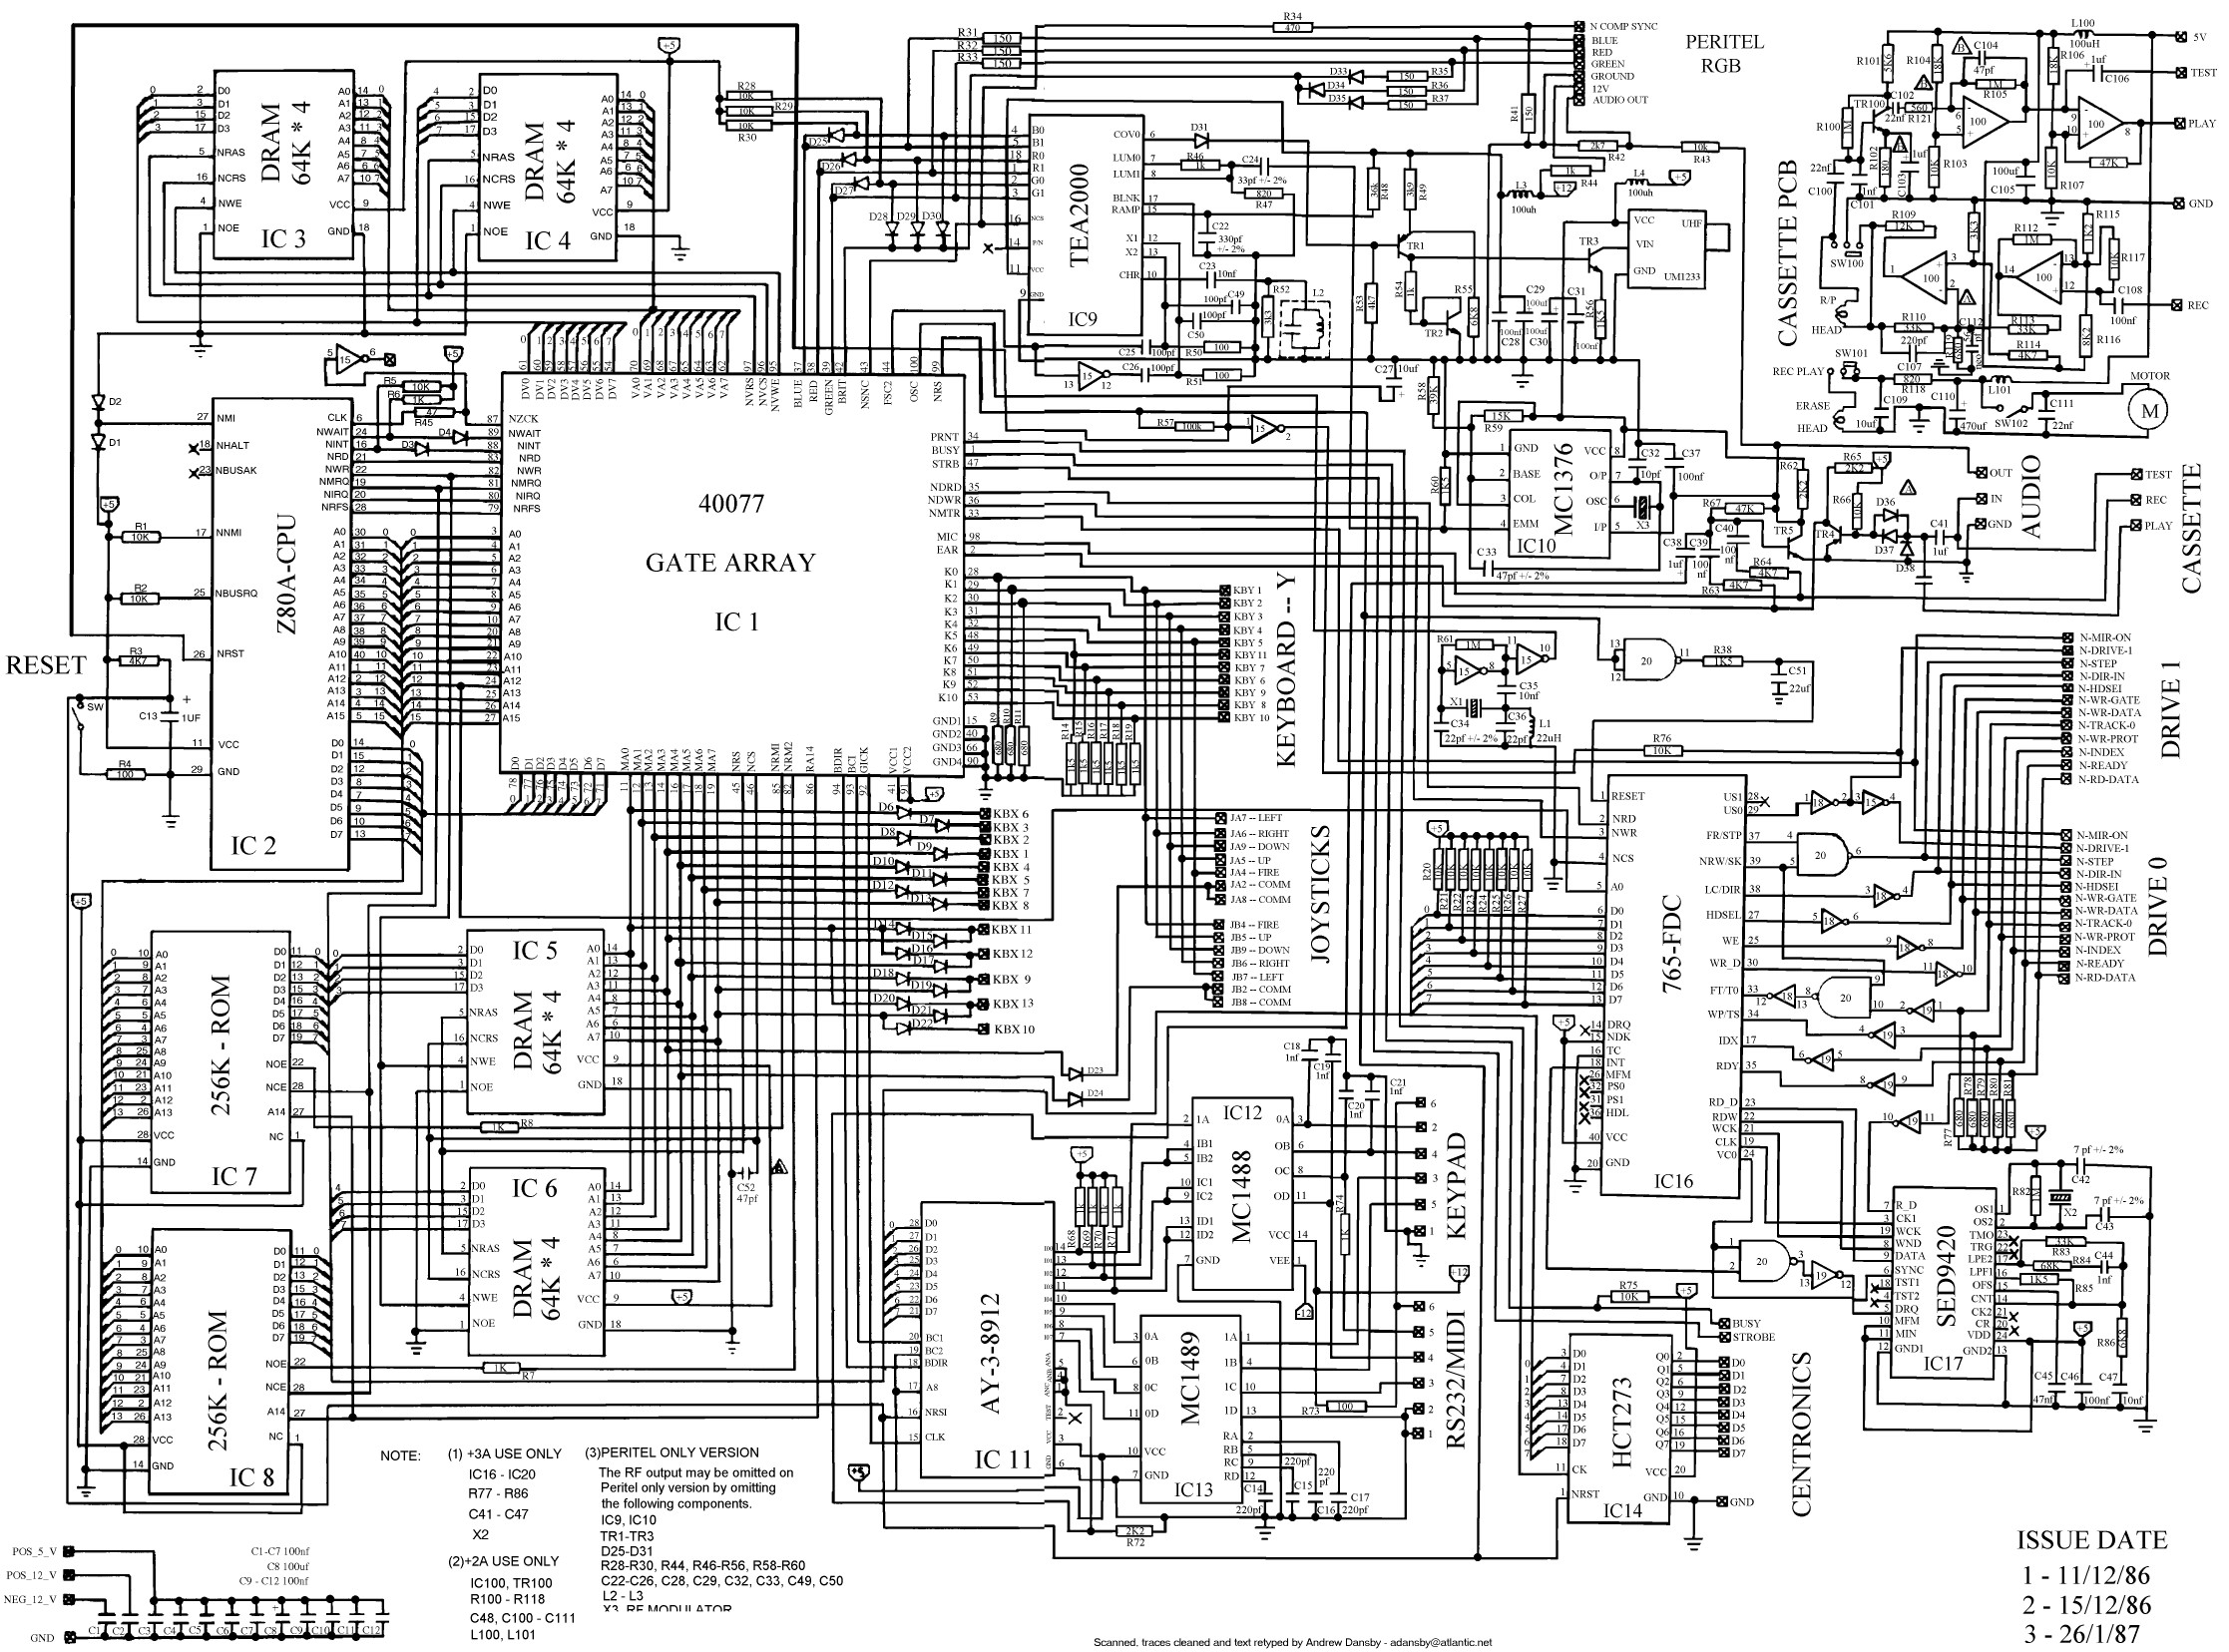 Electrical Engineering Wiring Diagram Electrical Engineering Diagram Www Jebas Us Microprocessor Map Of Electrical Engineering Wiring Diagram